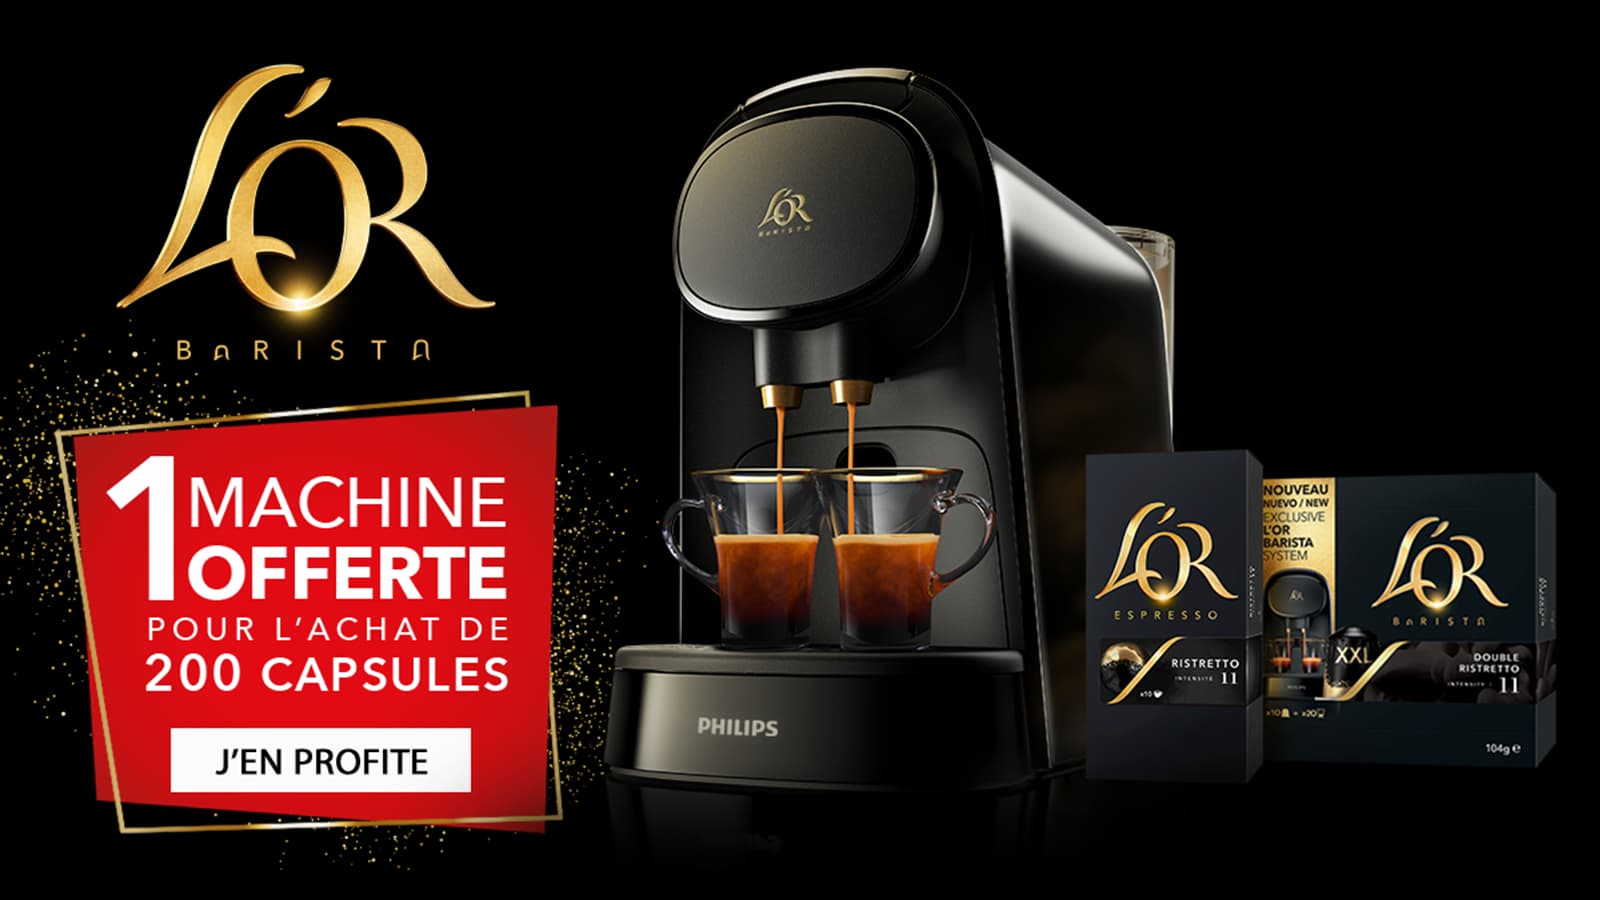 Machine à café L'OR BARISTA Sublime offerte pour 200 capsules achetées –